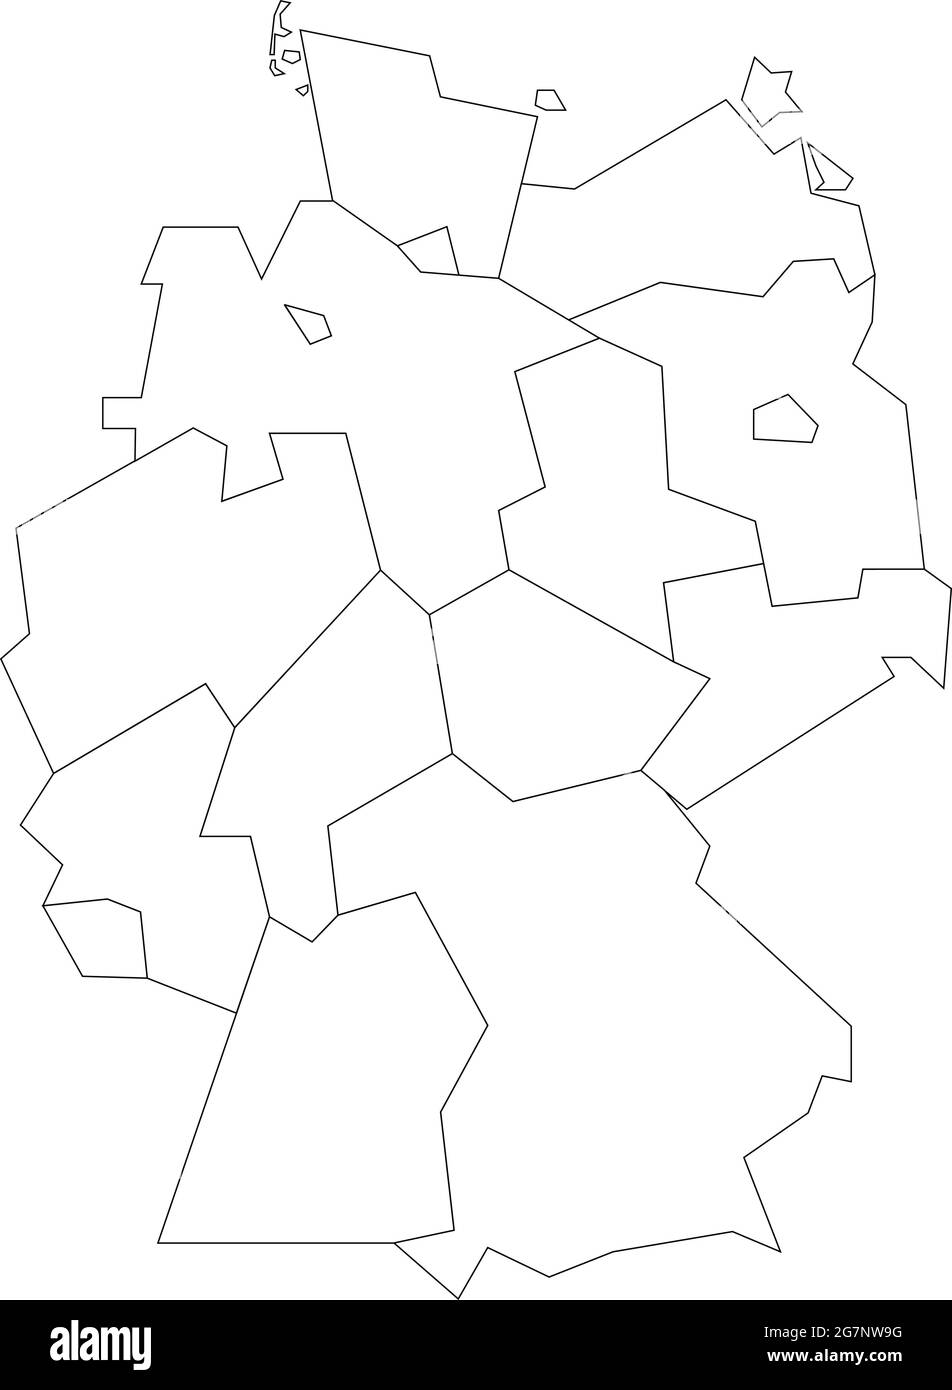 Mapa vectorial de Alemania para estudiar incoloro con contorno Ilustración del Vector